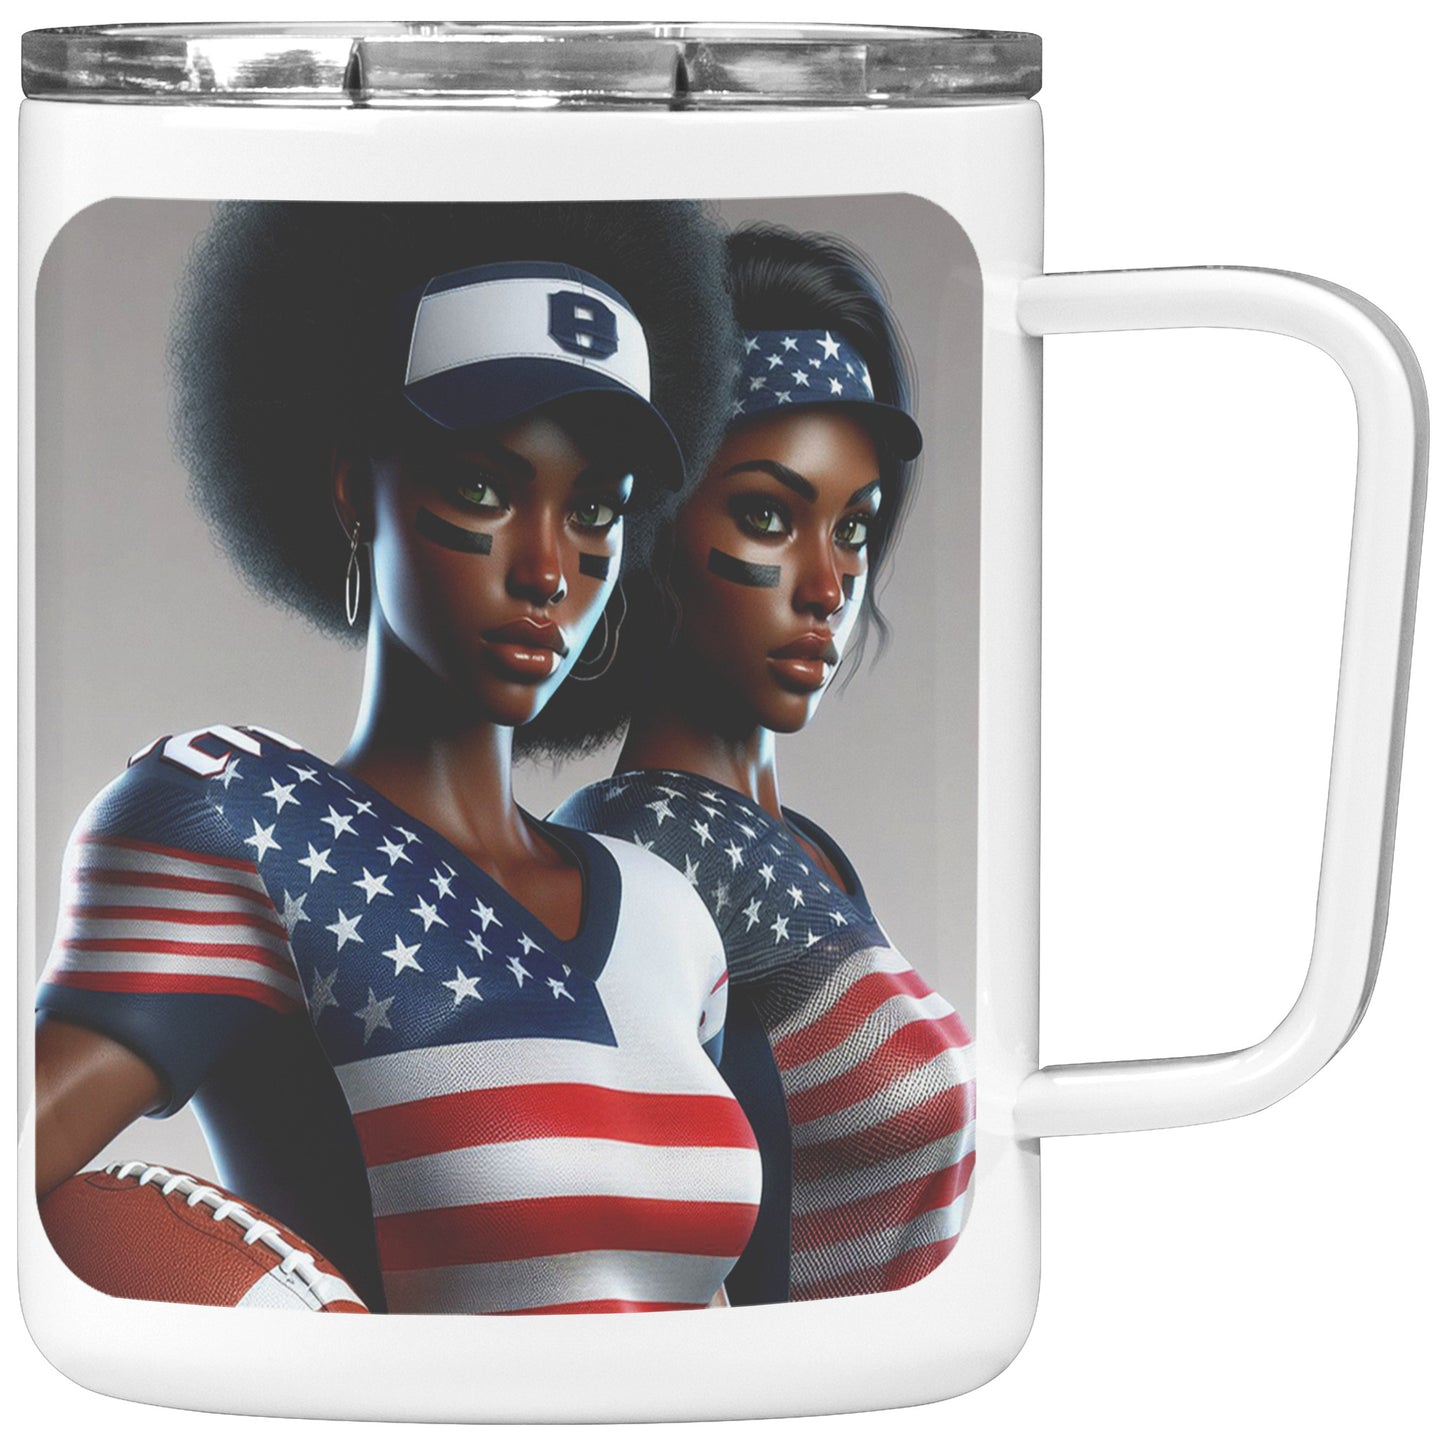 Woman Football Player - Insulated Coffee Mug #23